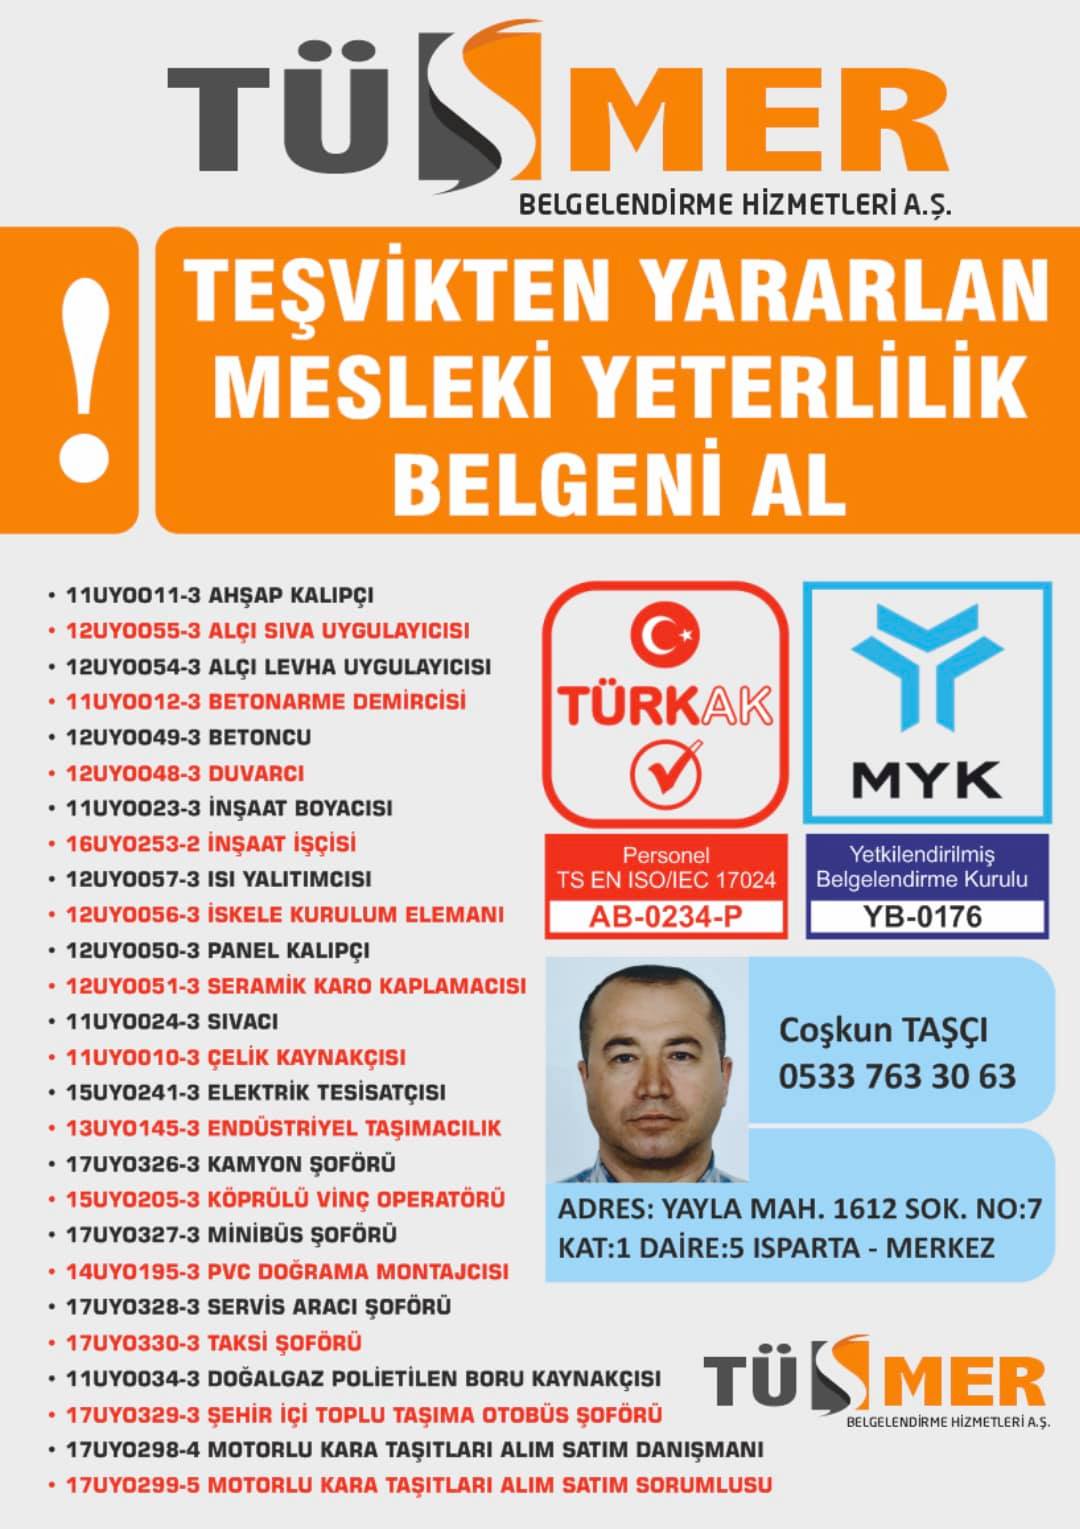 MYK MESLEKİ YETERLİLİK BELGESİ Levazım Beşiktaş İstanbul